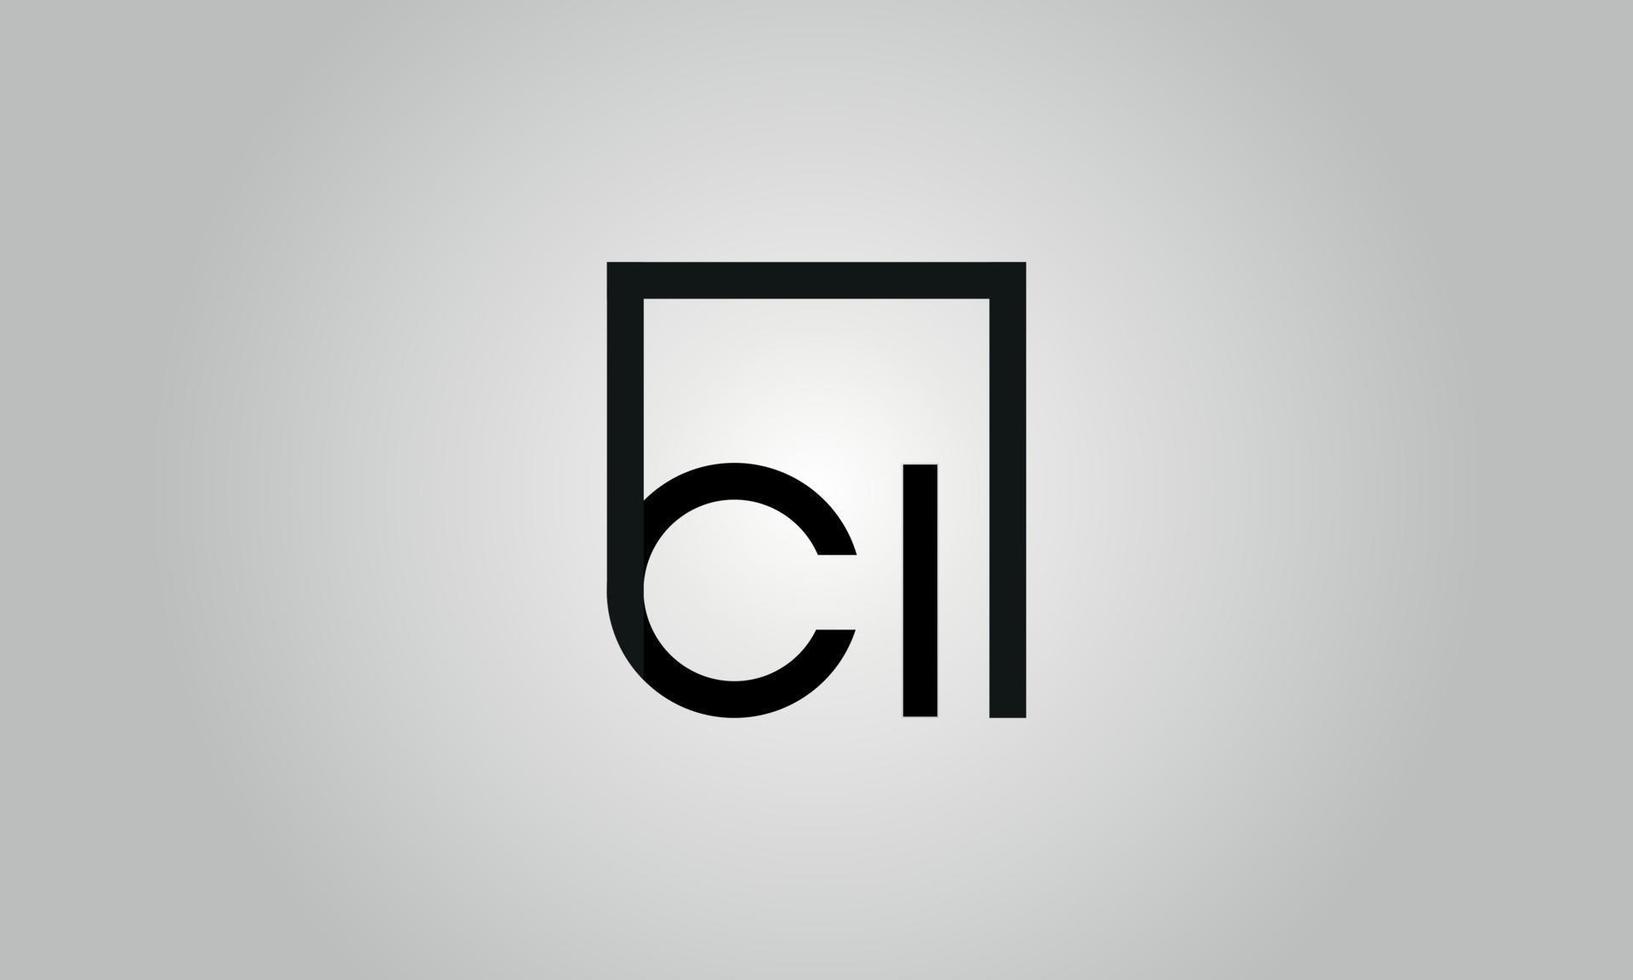 brief ci logo ontwerp. ci logo met plein vorm in zwart kleuren vector vrij vector sjabloon.